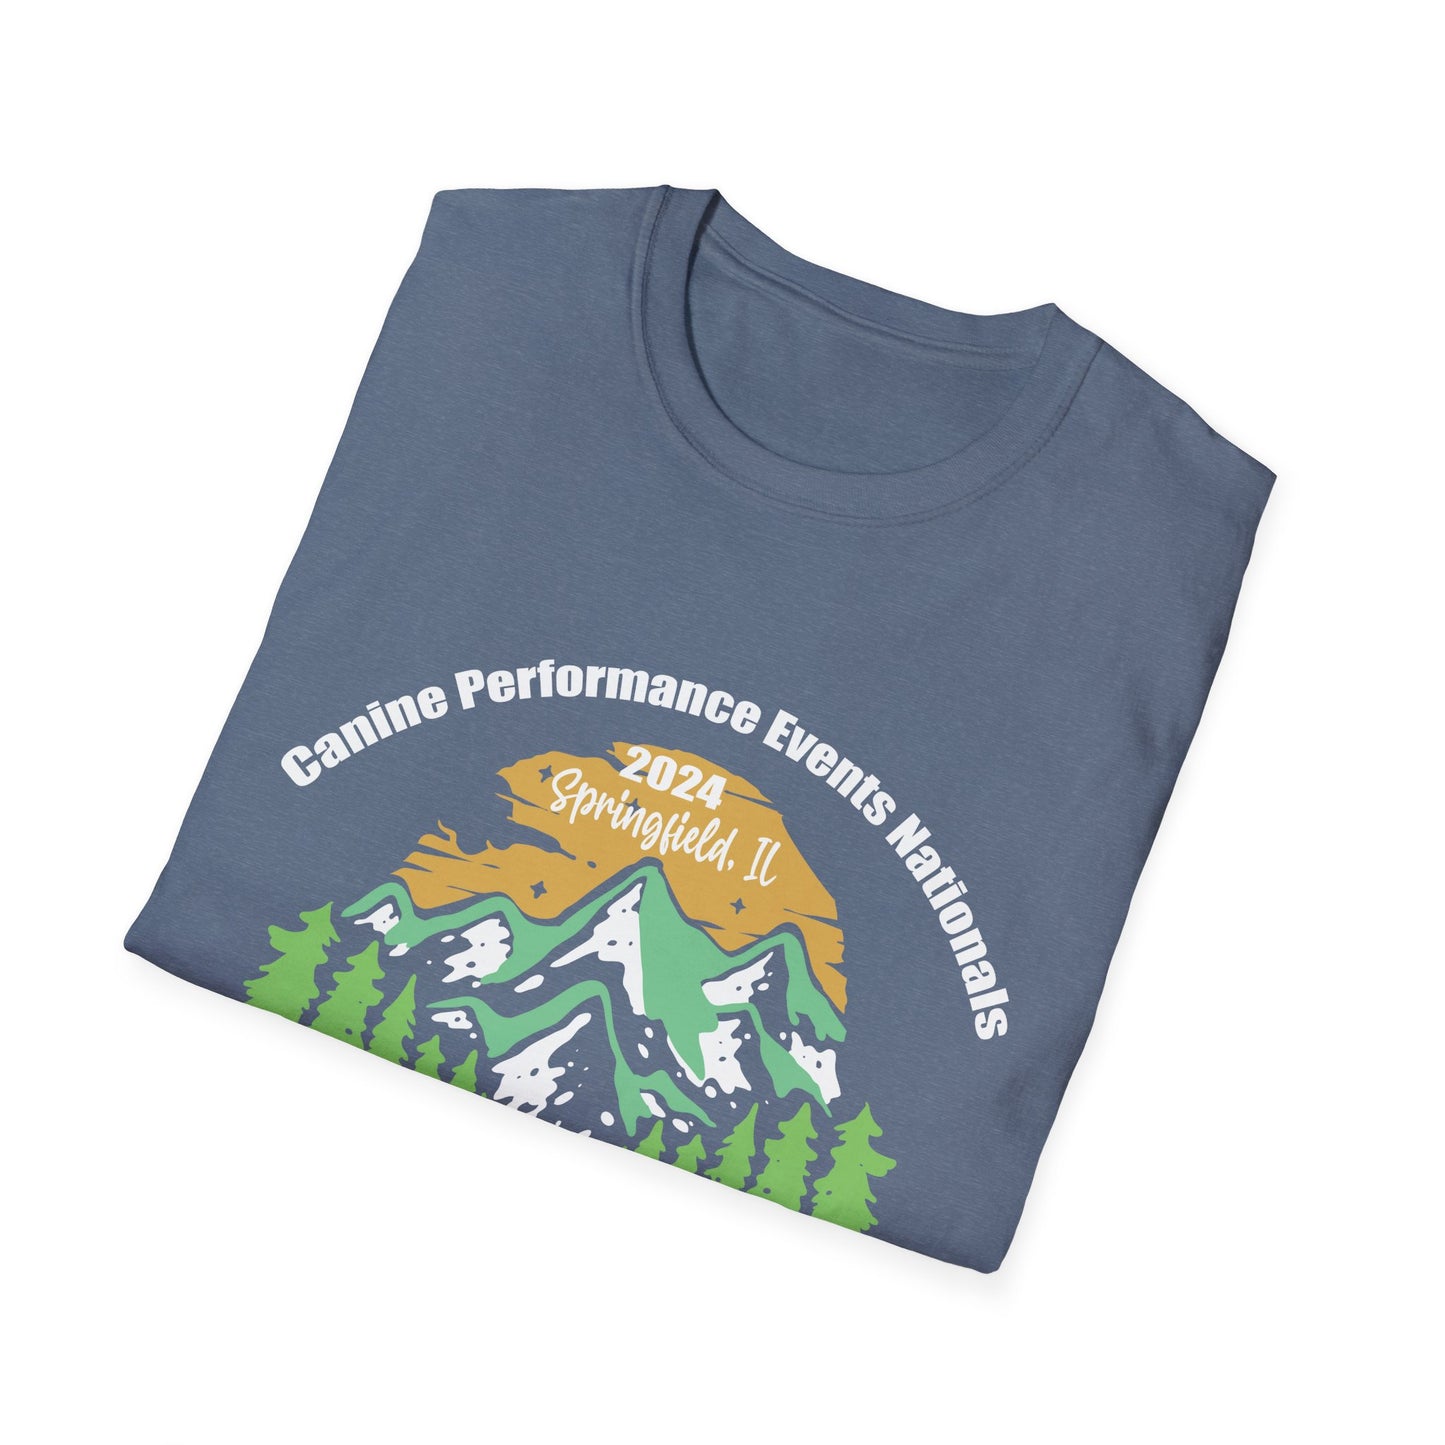 PNW CPE Unisex Softstyle T-Shirt